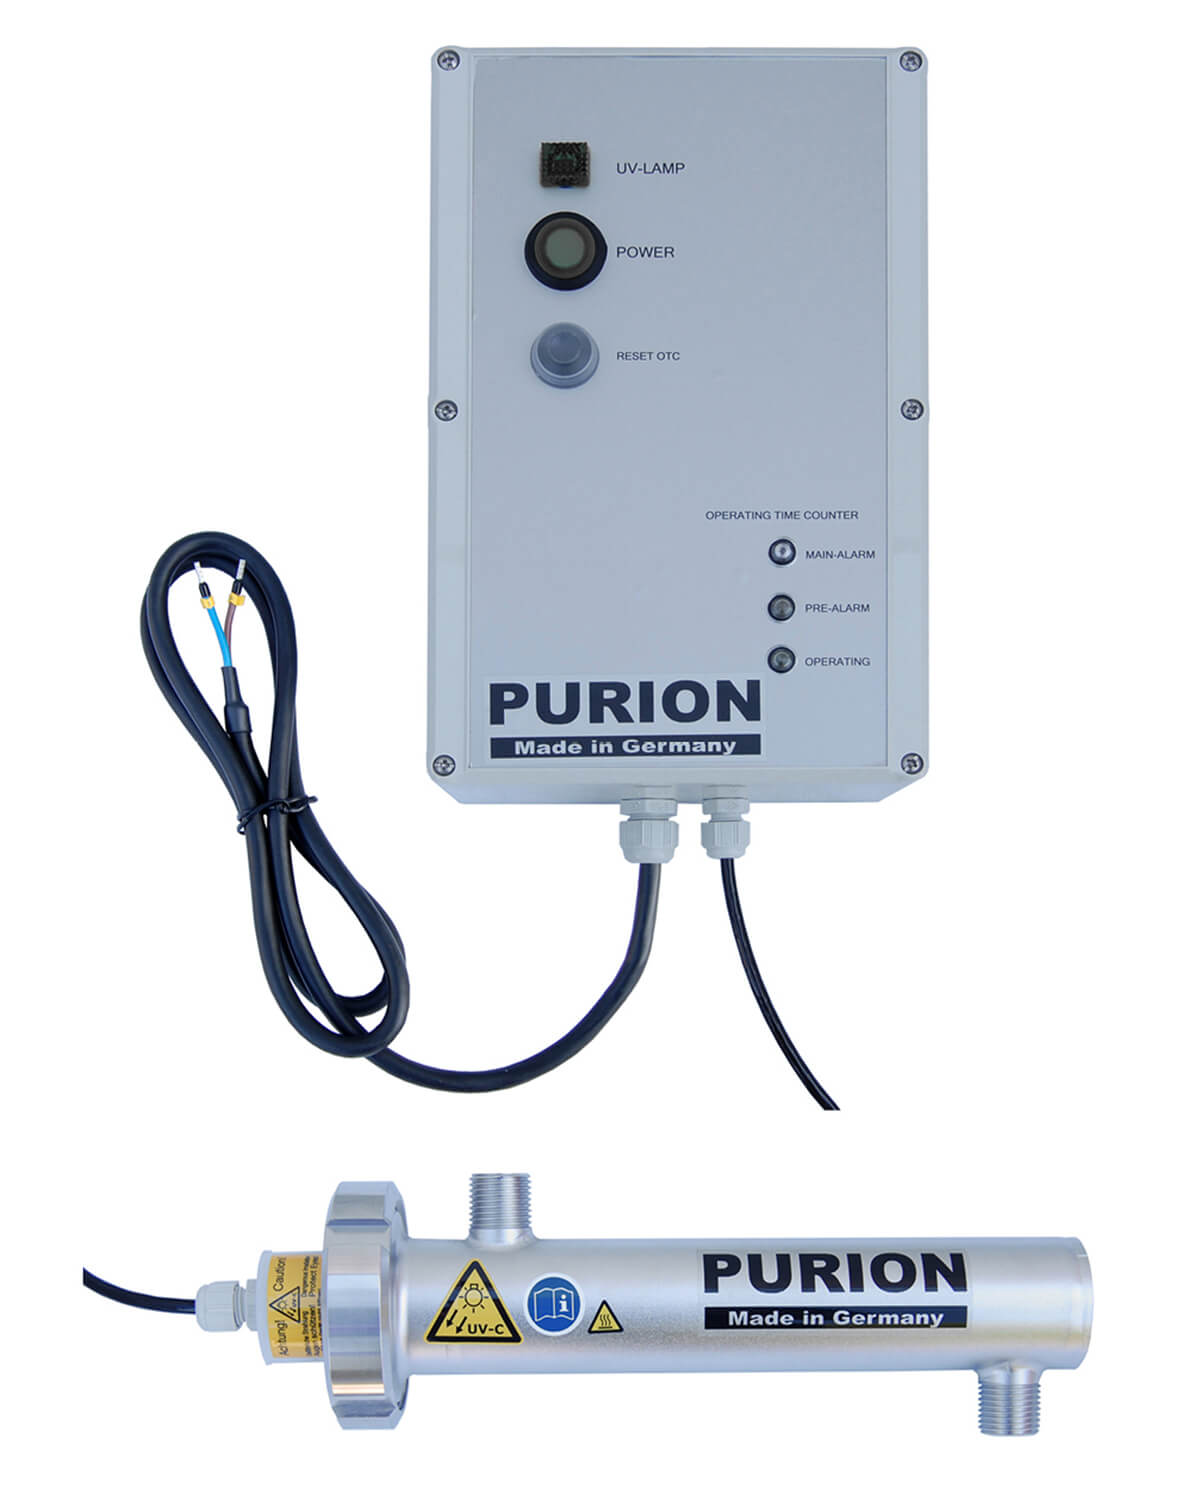 Um sicheres und reines Trinkwasser zu gewährleisten, nutzt die PURION GmbH die PURION 400 12 V/24 V DC Basic-Technologie.